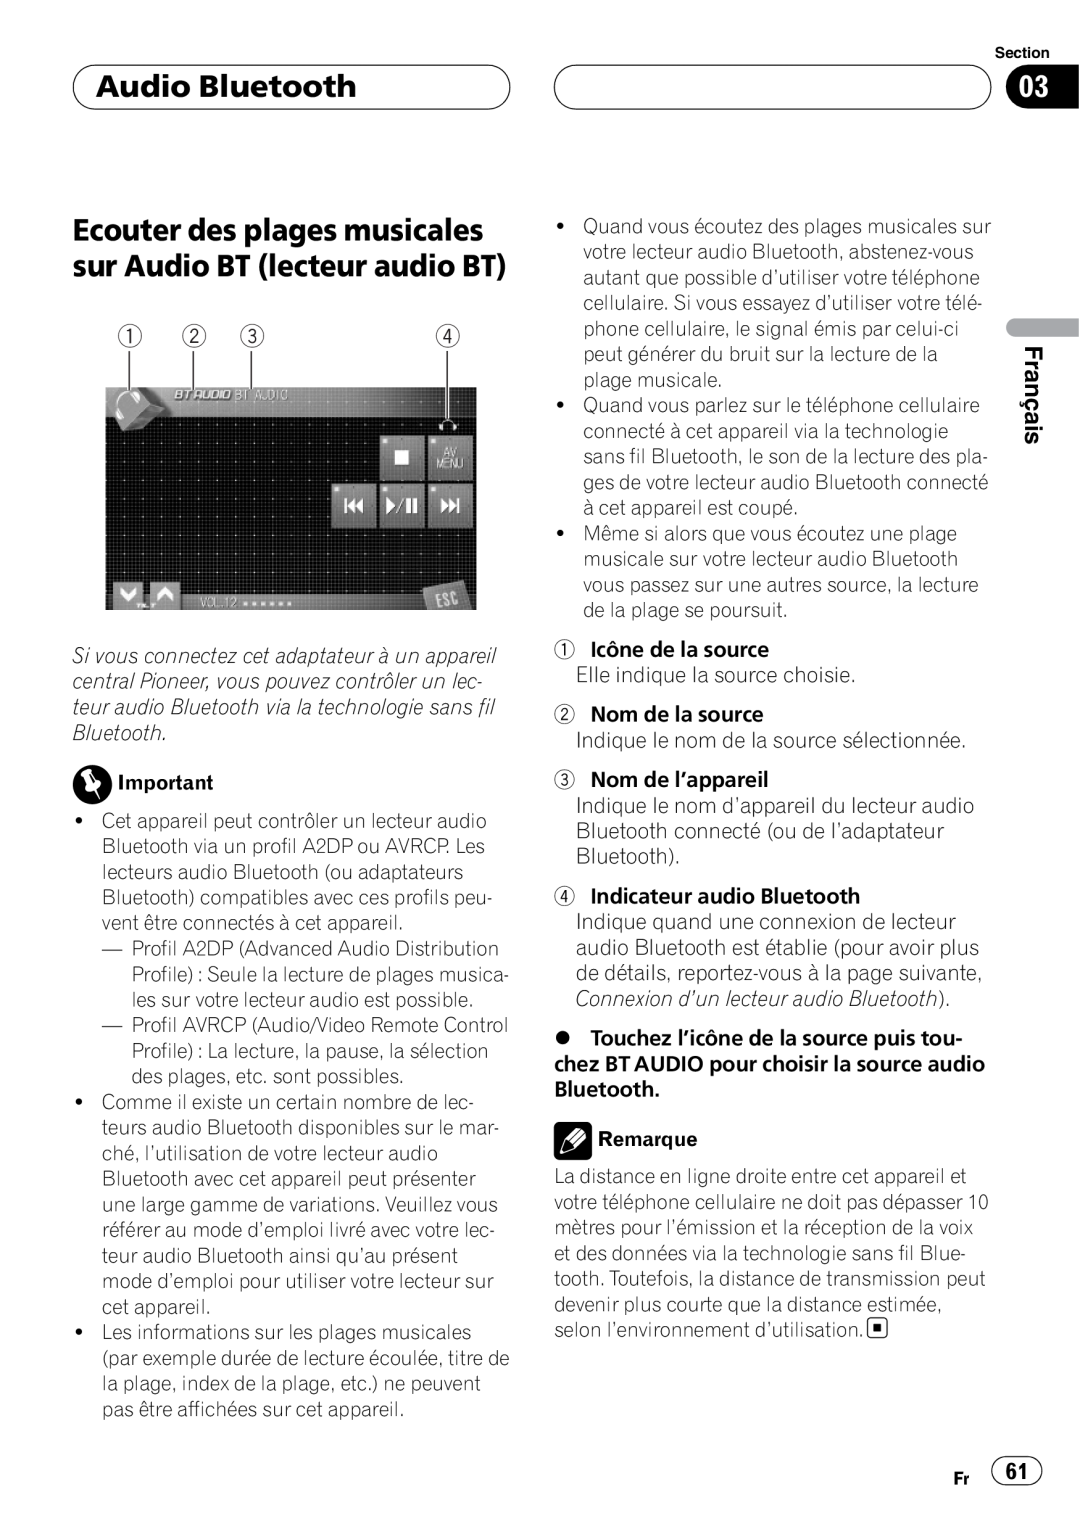 Pioneer CD-BTB100 owner manual Audio Bluetooth, Ecouter des plages musicales sur Audio BT lecteur audio BT, Français 